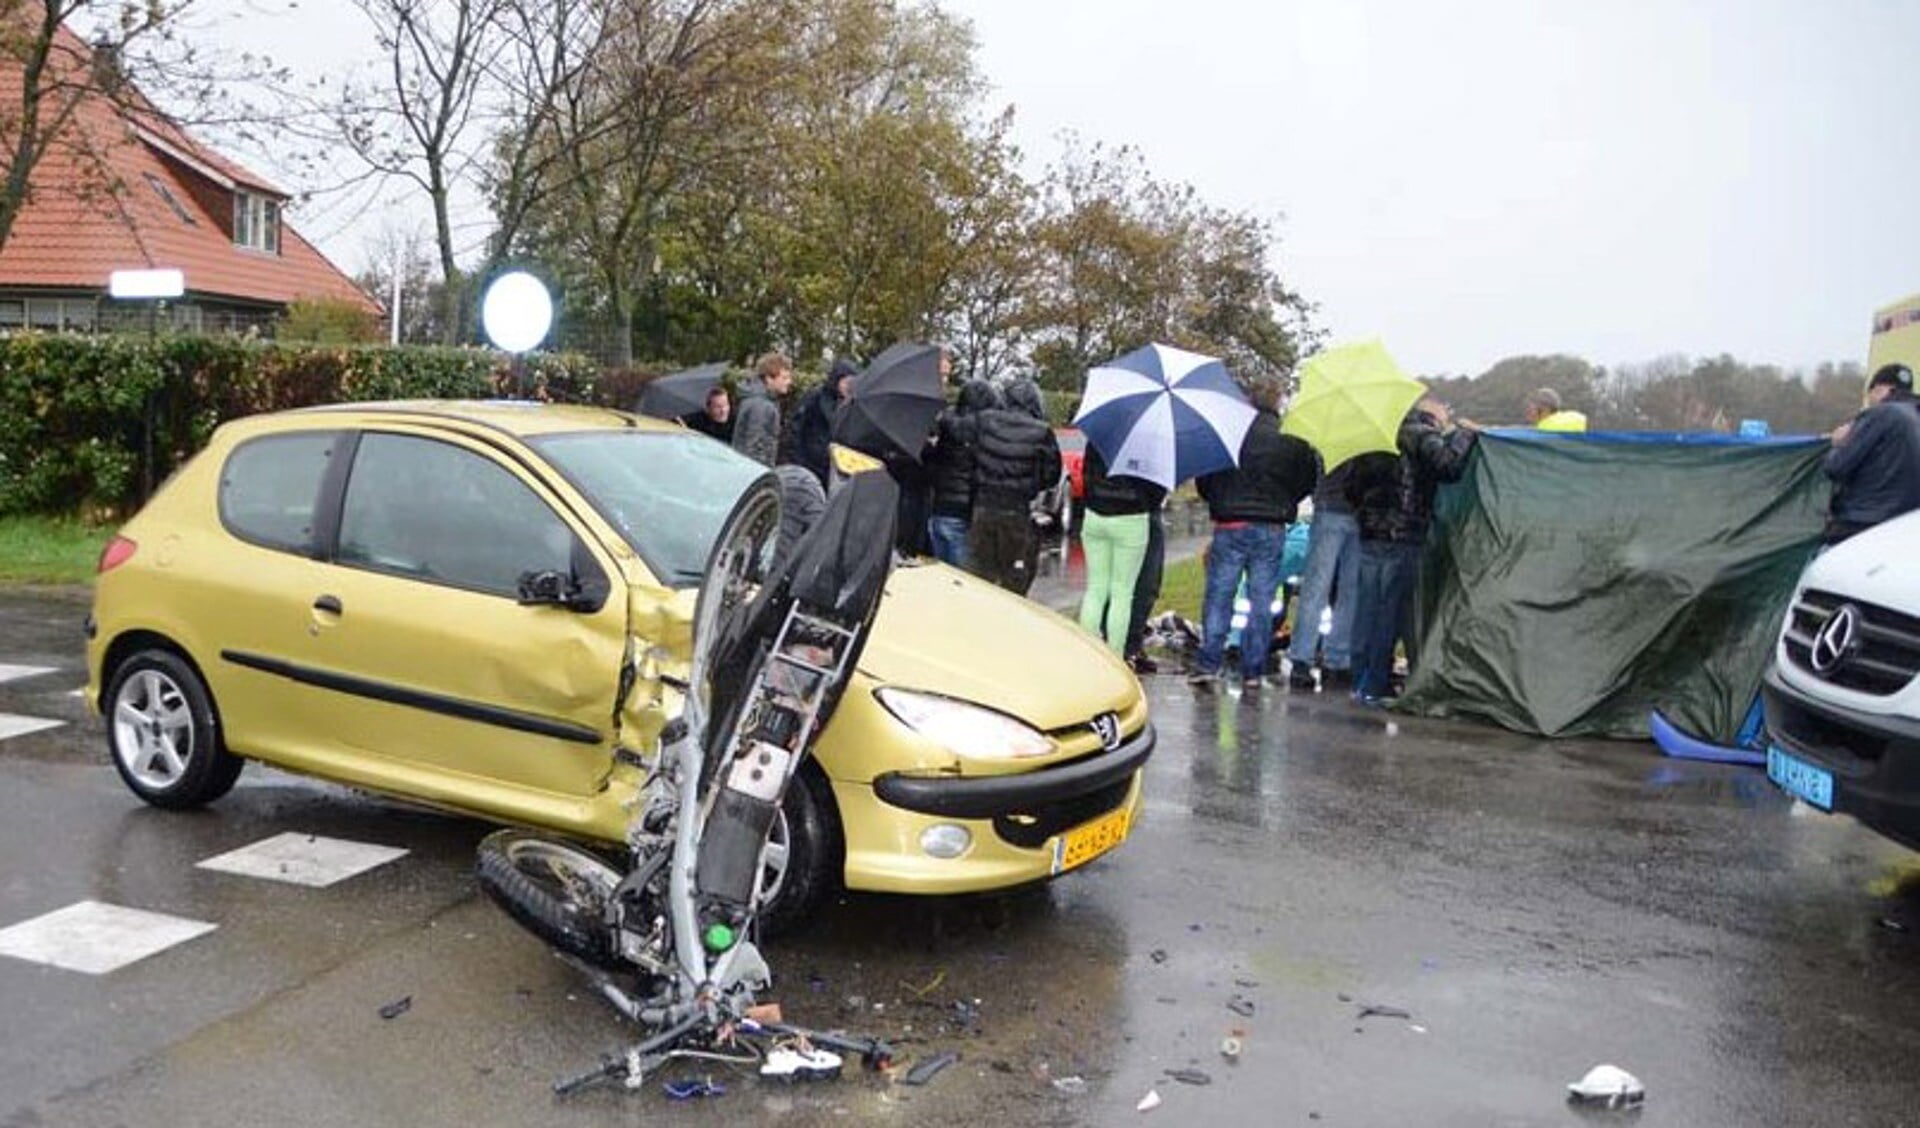 Het brommerongeval half oktober 2012 waarbij de berijder en zijn passagier gewond raakten. (Foto Marcel Winter/Texelphoto.nl)